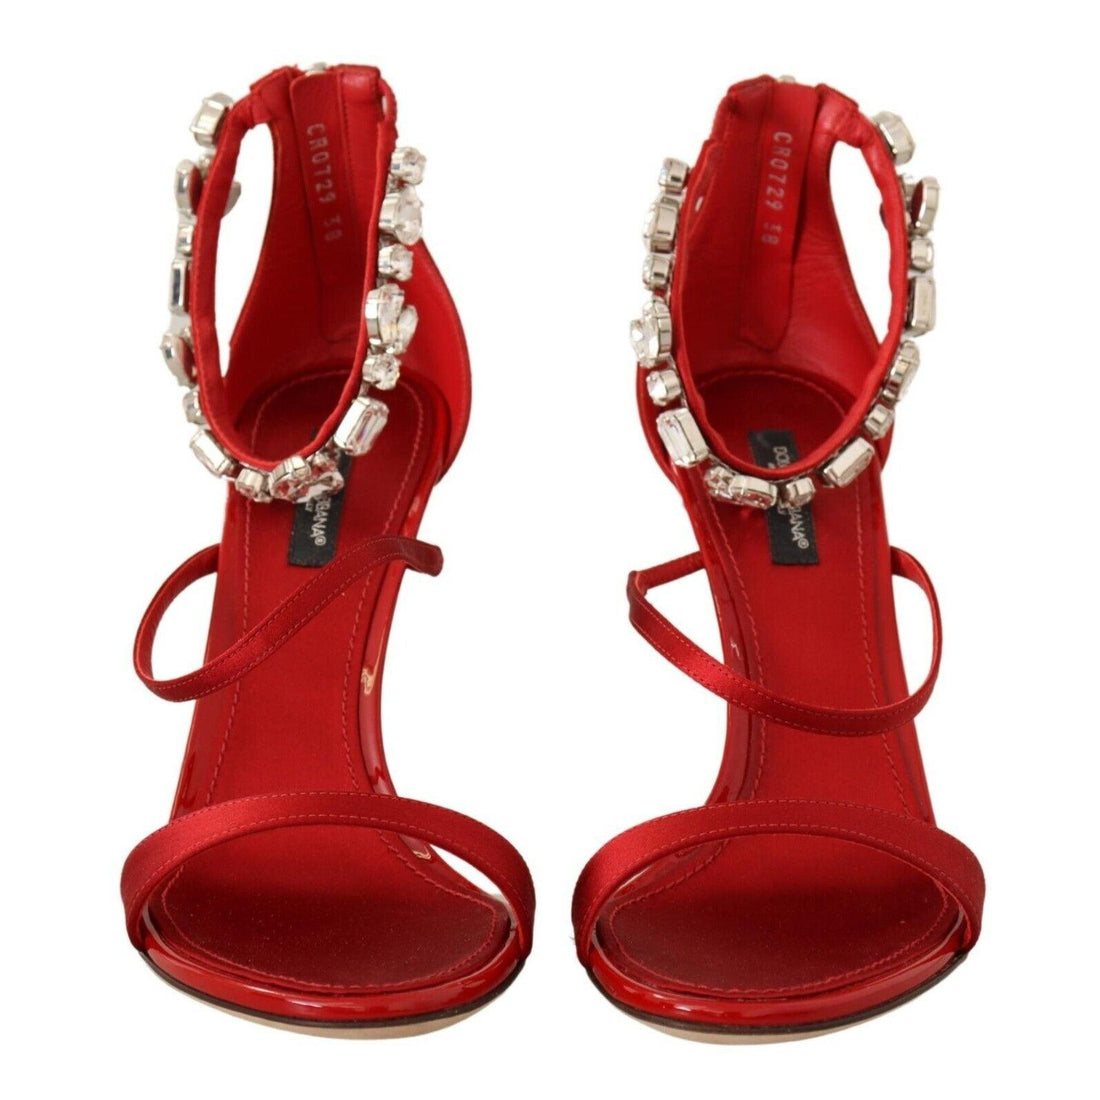 Keira Devotion Embellished Quilted Sandals